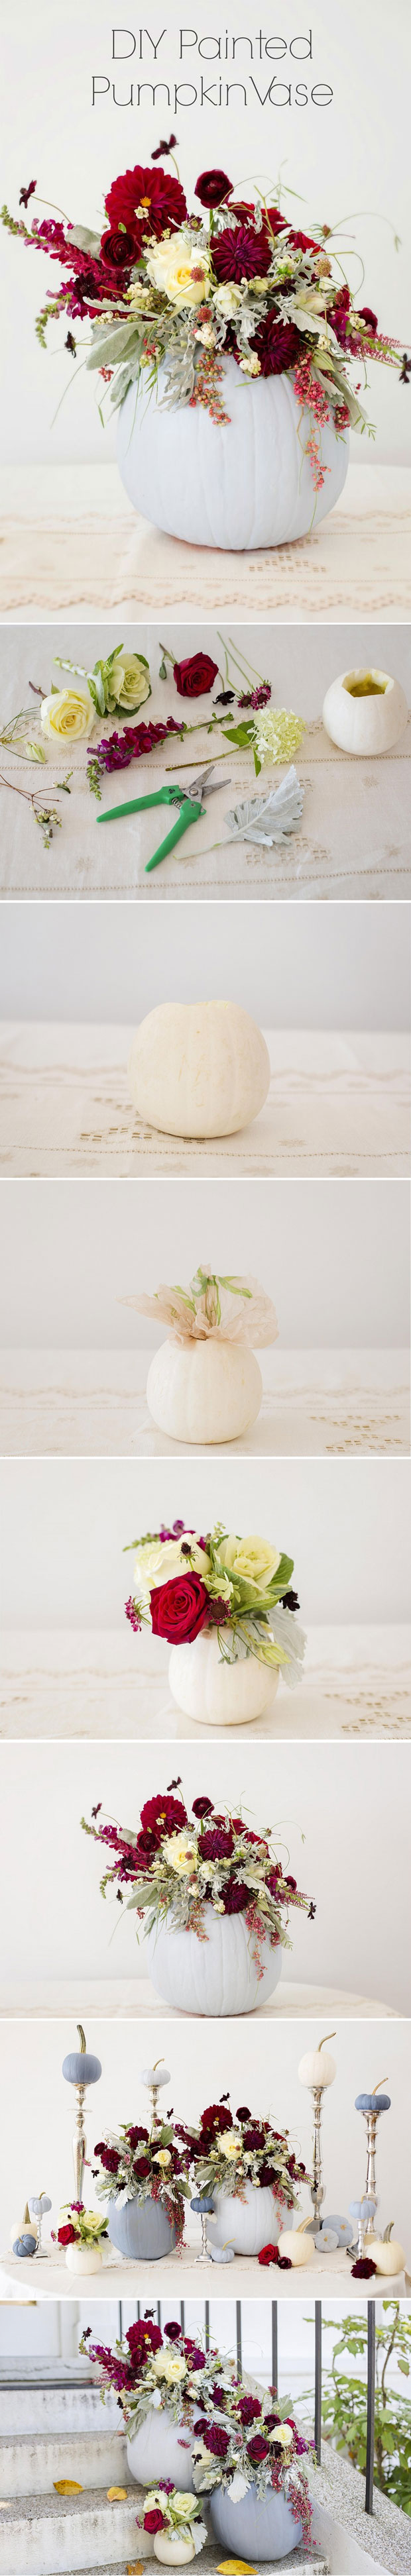 DIY Pumpkin Vase For Halloween.